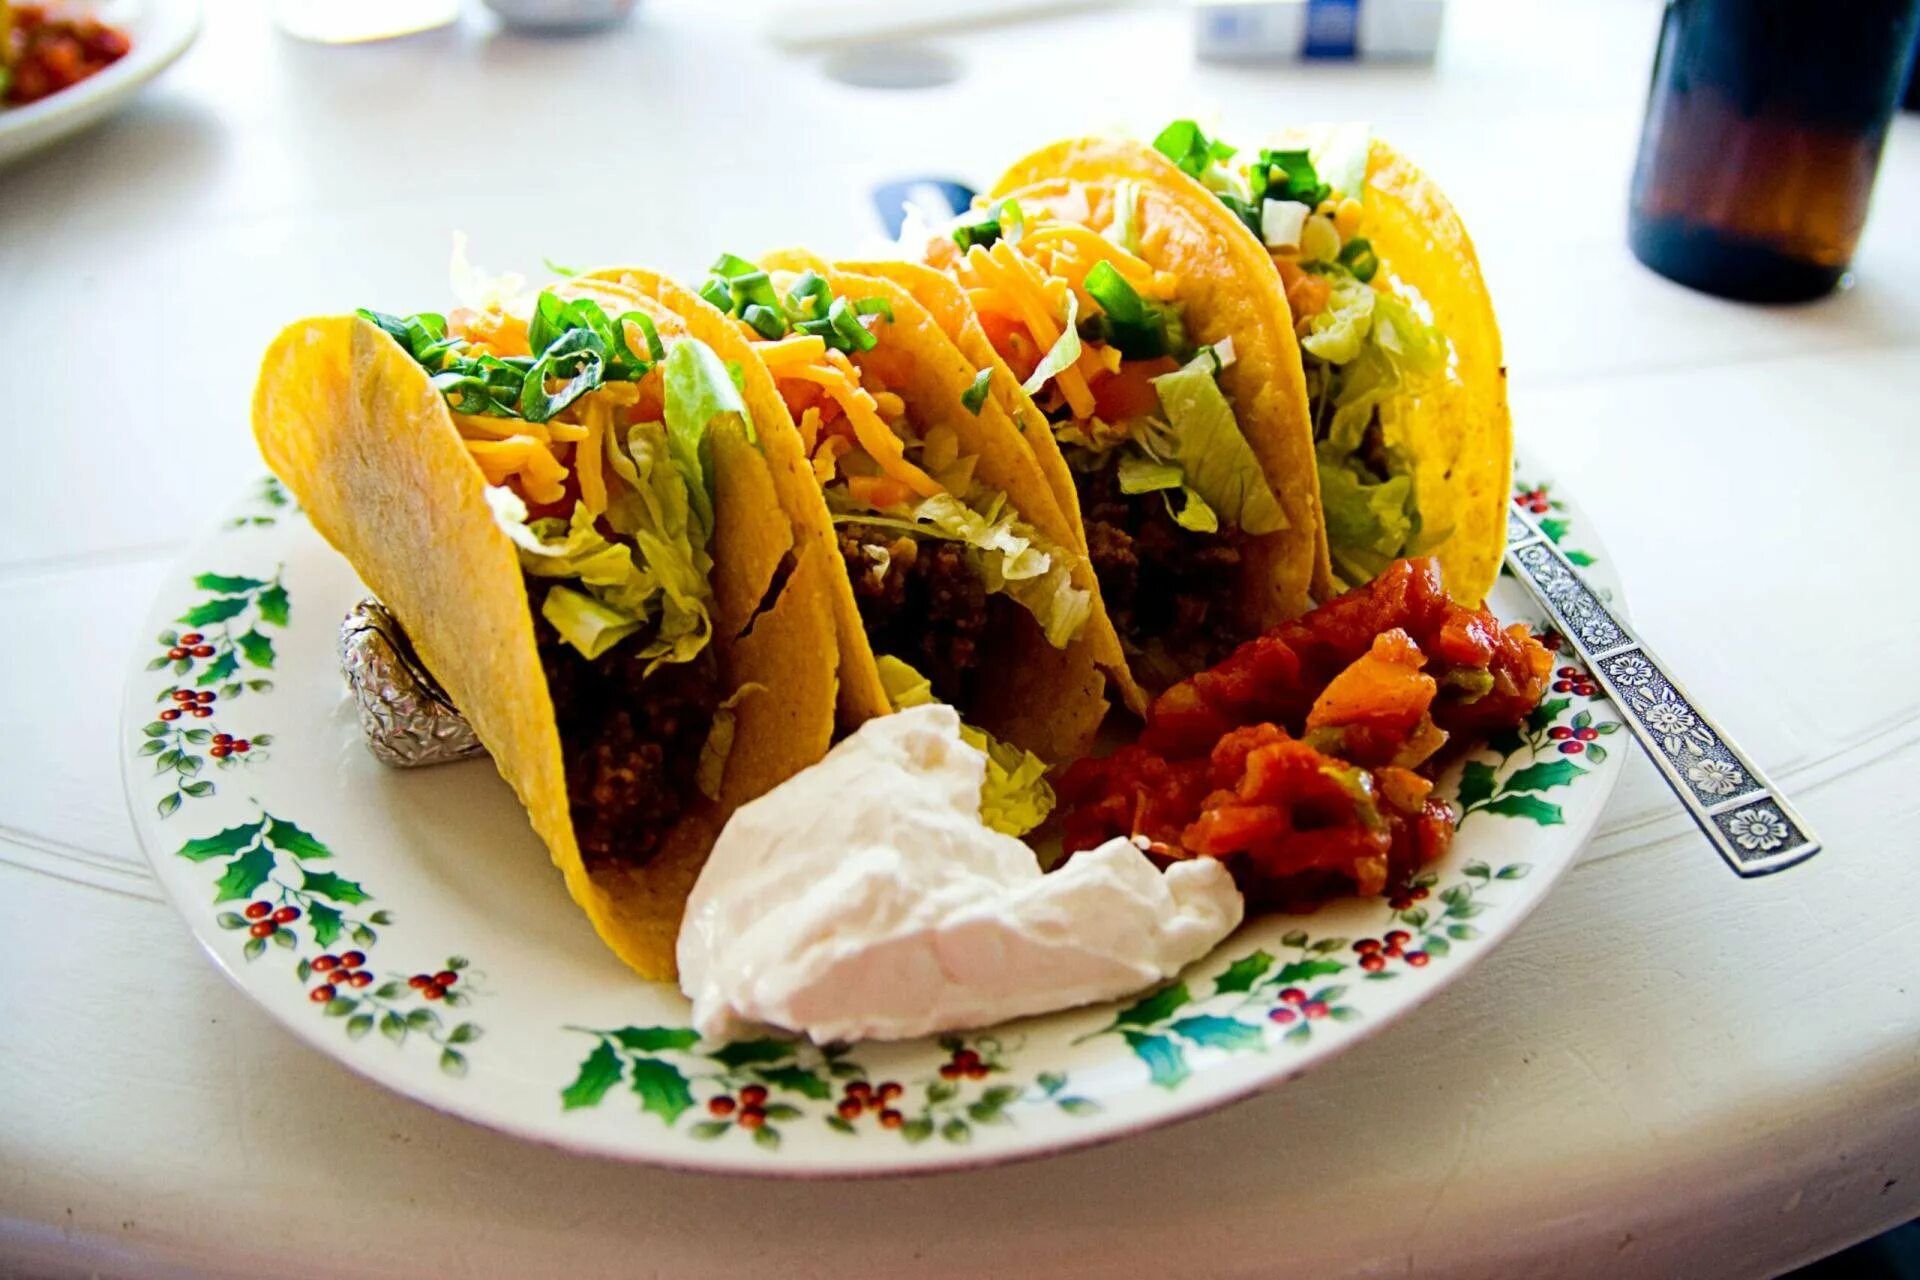 Про тако. Мексиканская кухня Такос. Мексиканская кухня тако, Тортилья. Национальное блюдо Мексики Такос. Тако или Такос.